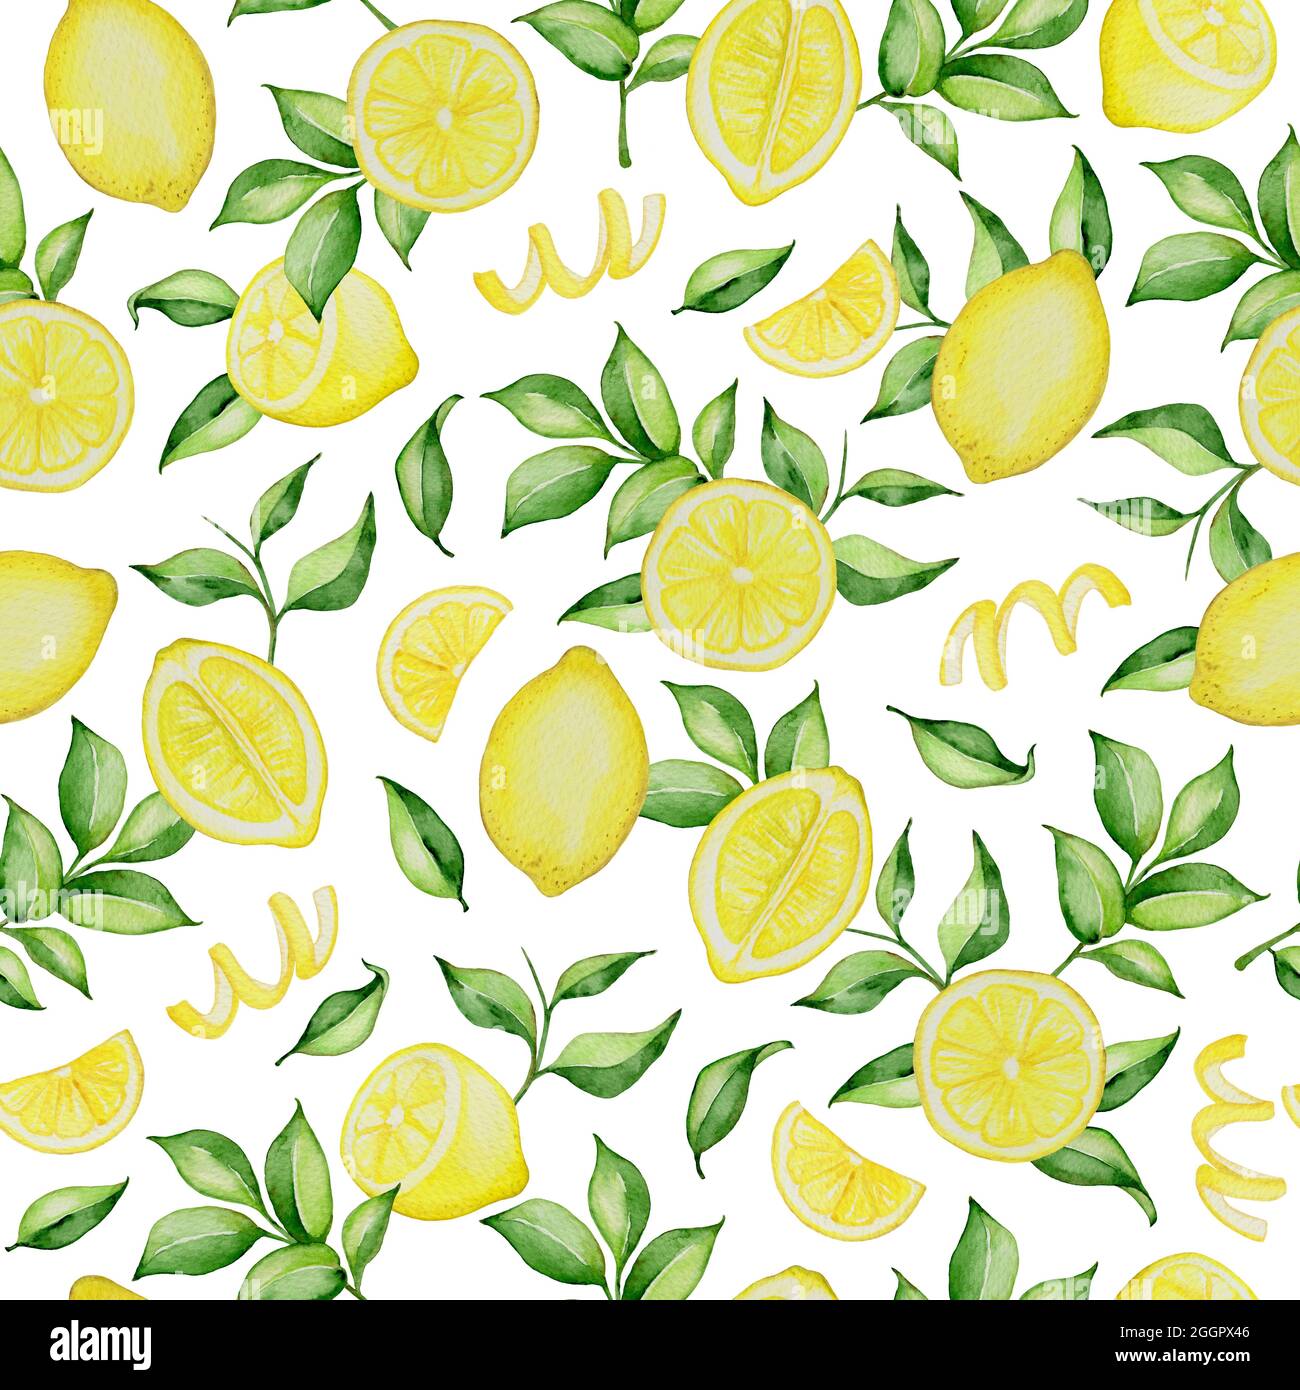 Handgezeichnetes Aquarell-Nahtloses Muster mit Zitronen und grünen Blättern auf weißem Hintergrund Stockfoto